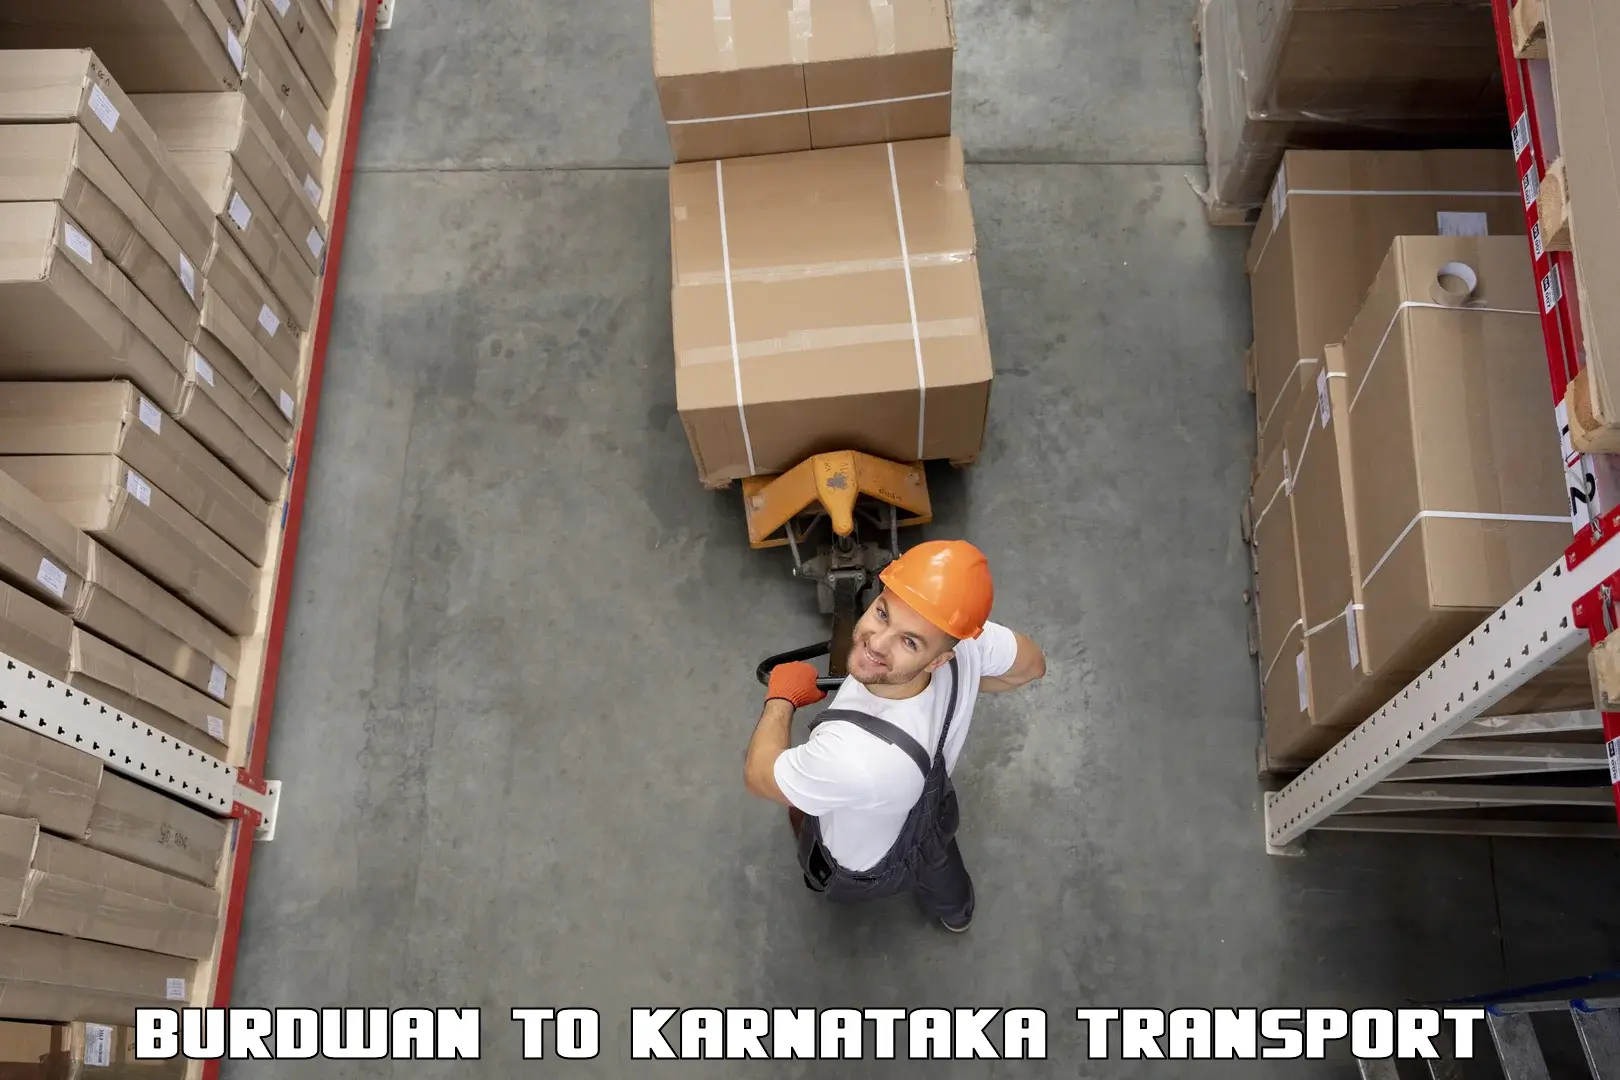 Transport shared services Burdwan to Karnataka